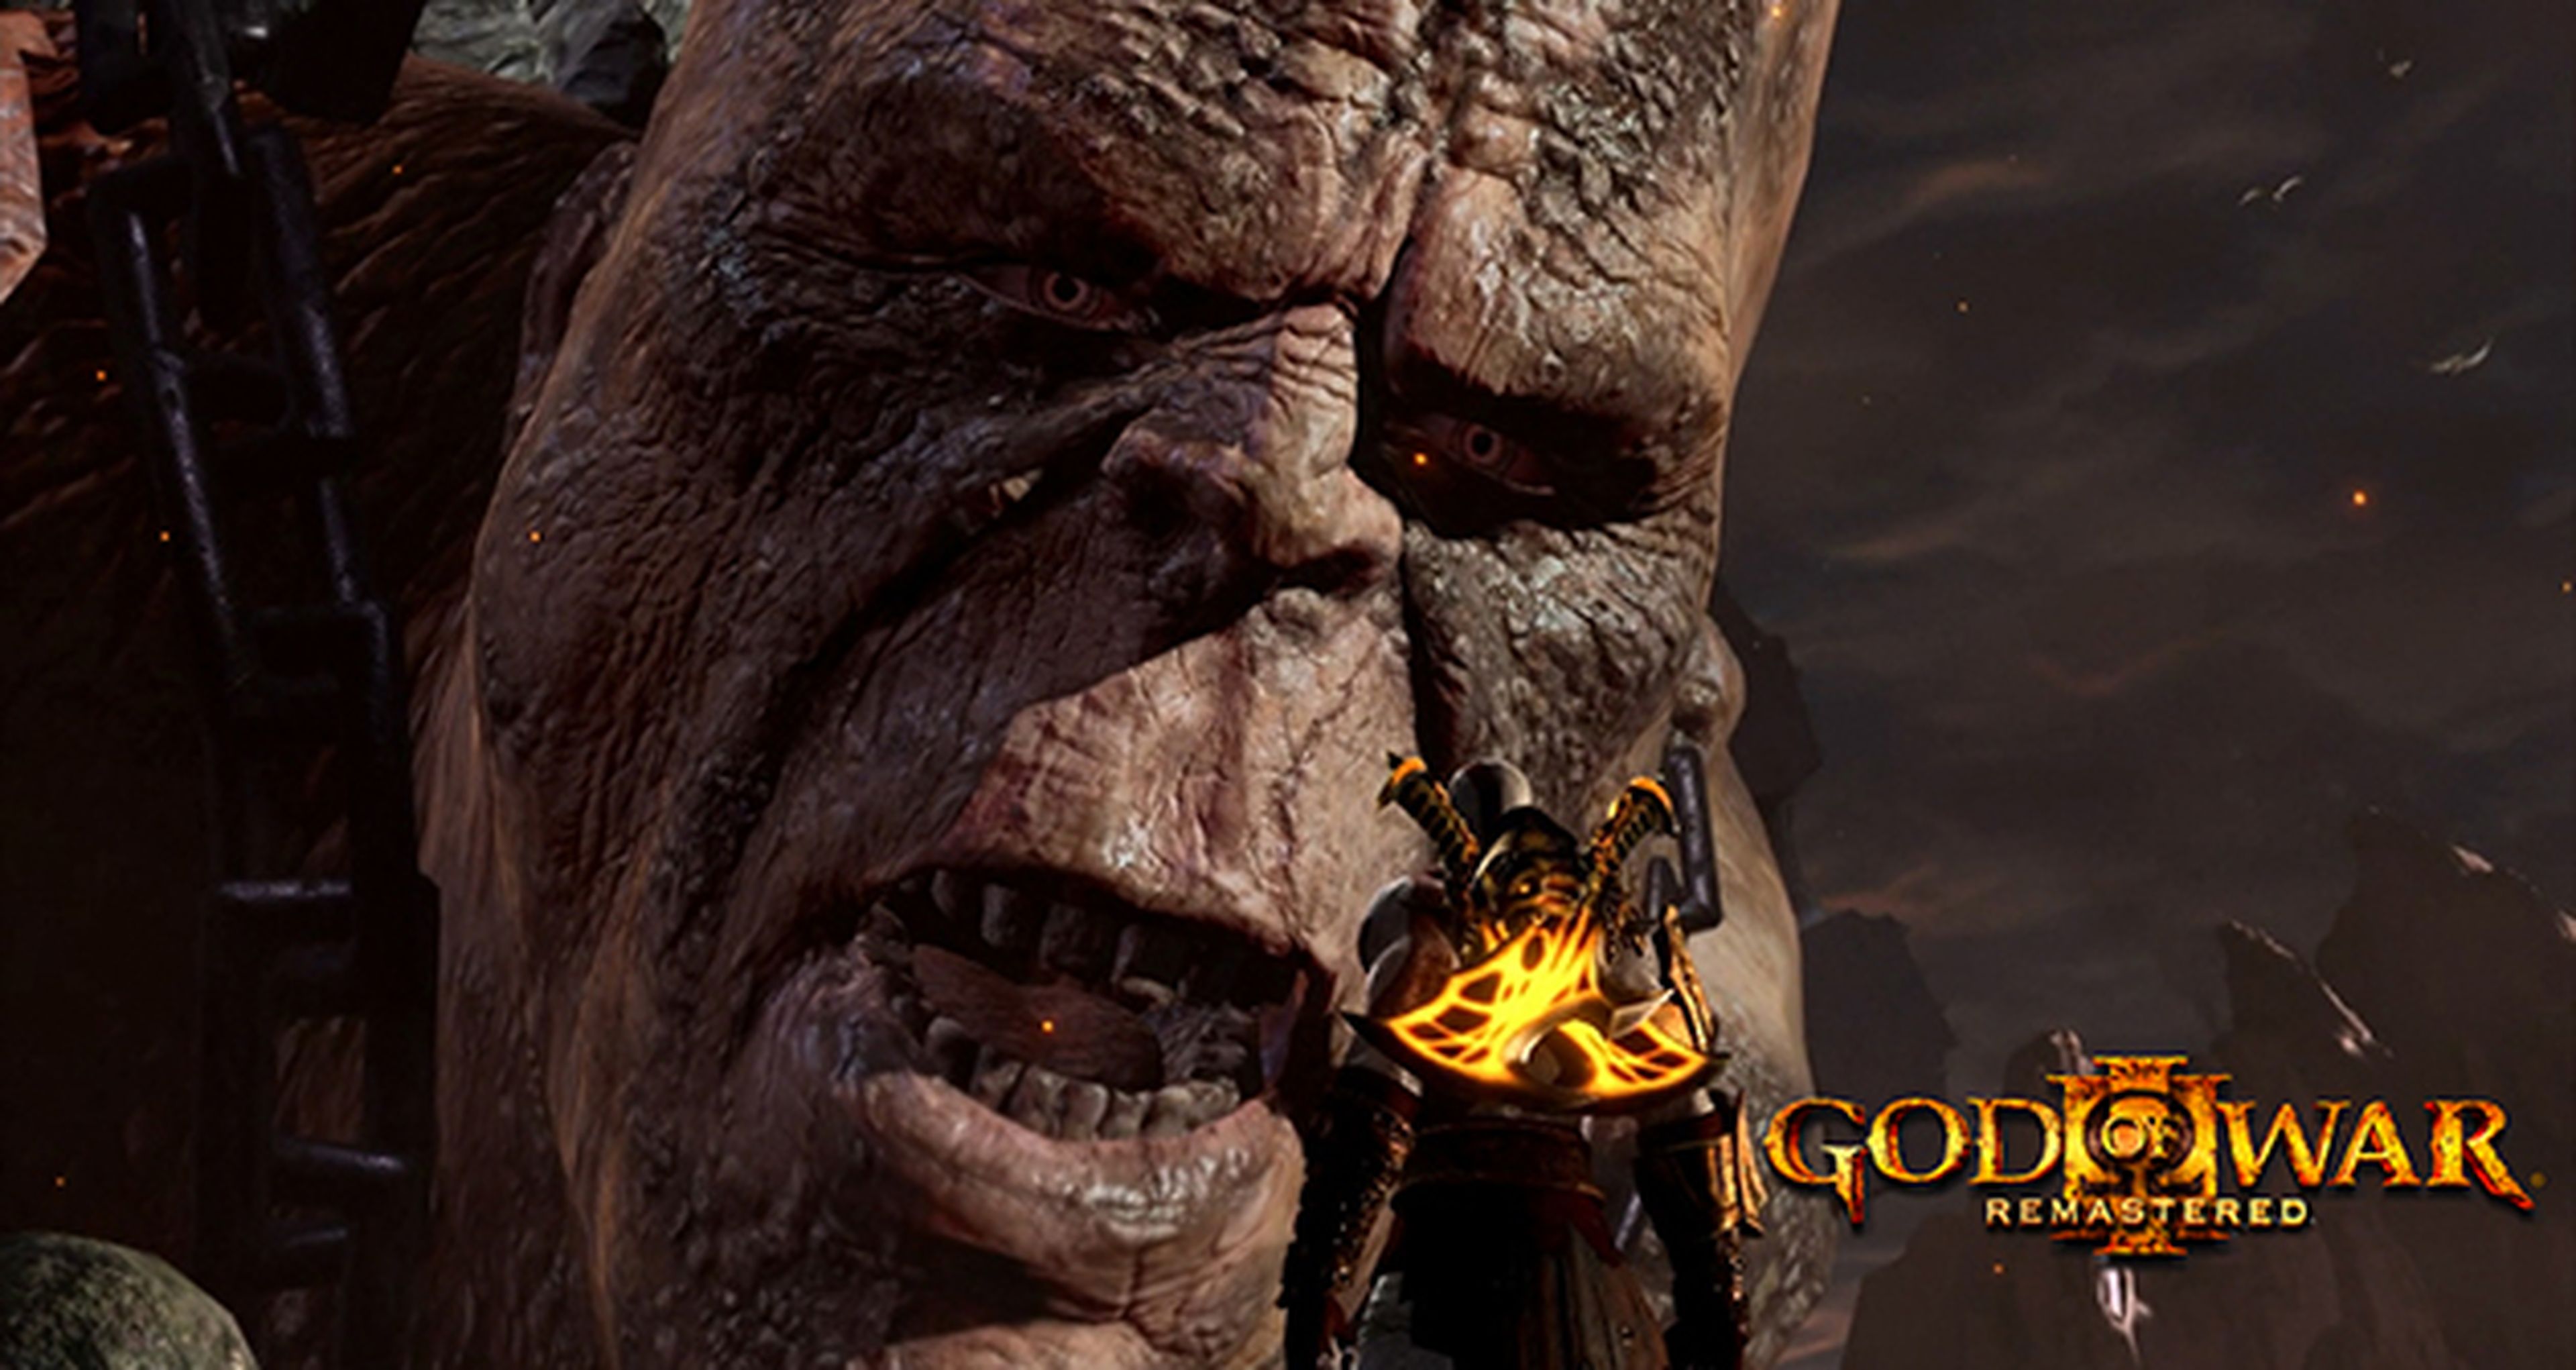 entrega a domicilio Usual secuencia Nuevos detalles sobre God of War III Remastered en PS4 | Hobby Consolas